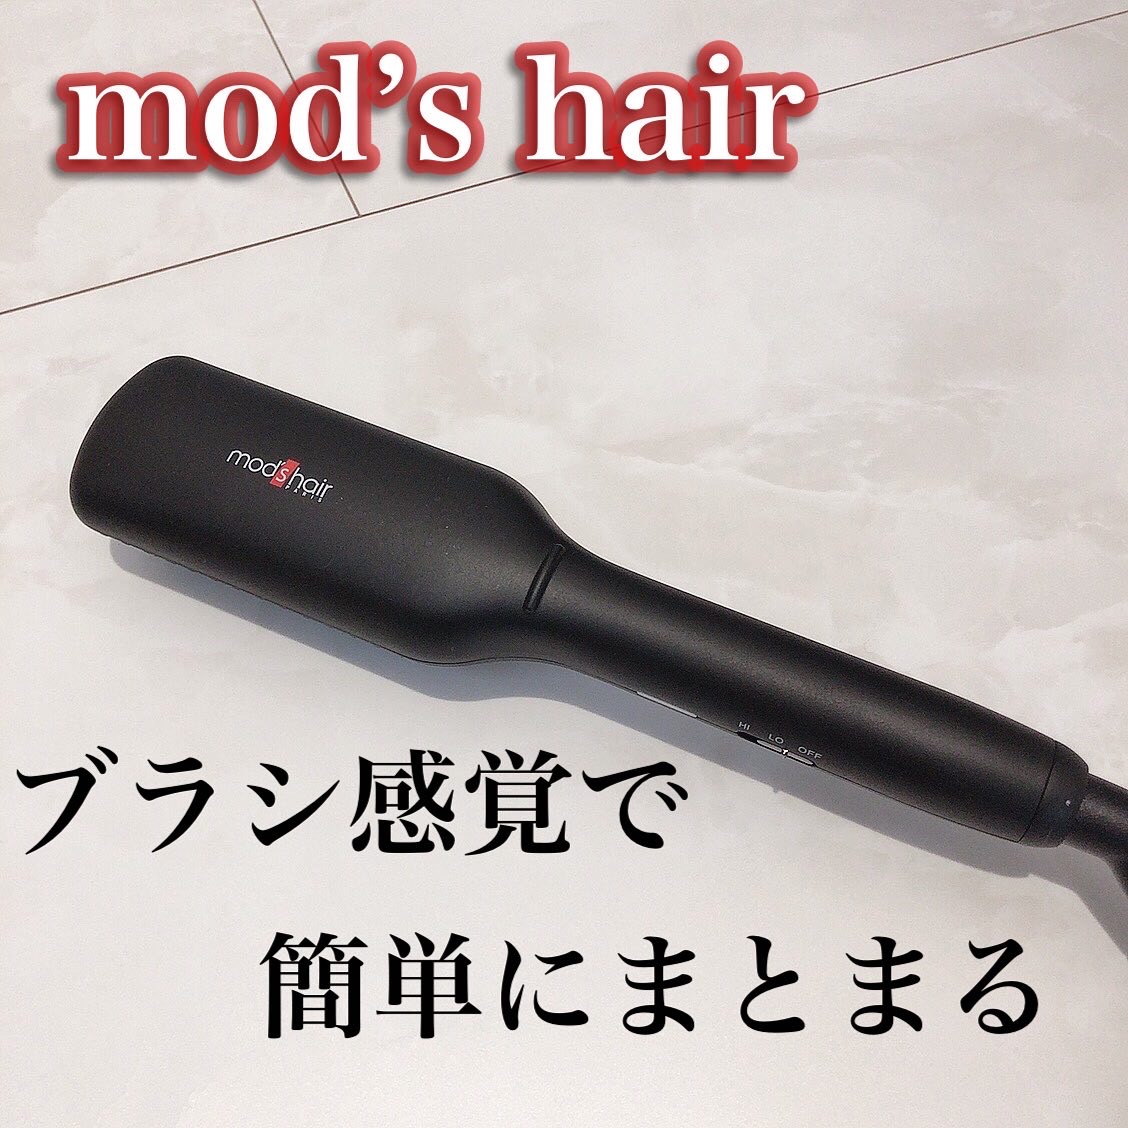 mod’s hair(モッズ・ヘア) スタイリッシュ コンパクトイオンヒートブラシ MHB-3040の良い点・メリットに関するkhさんの口コミ画像1